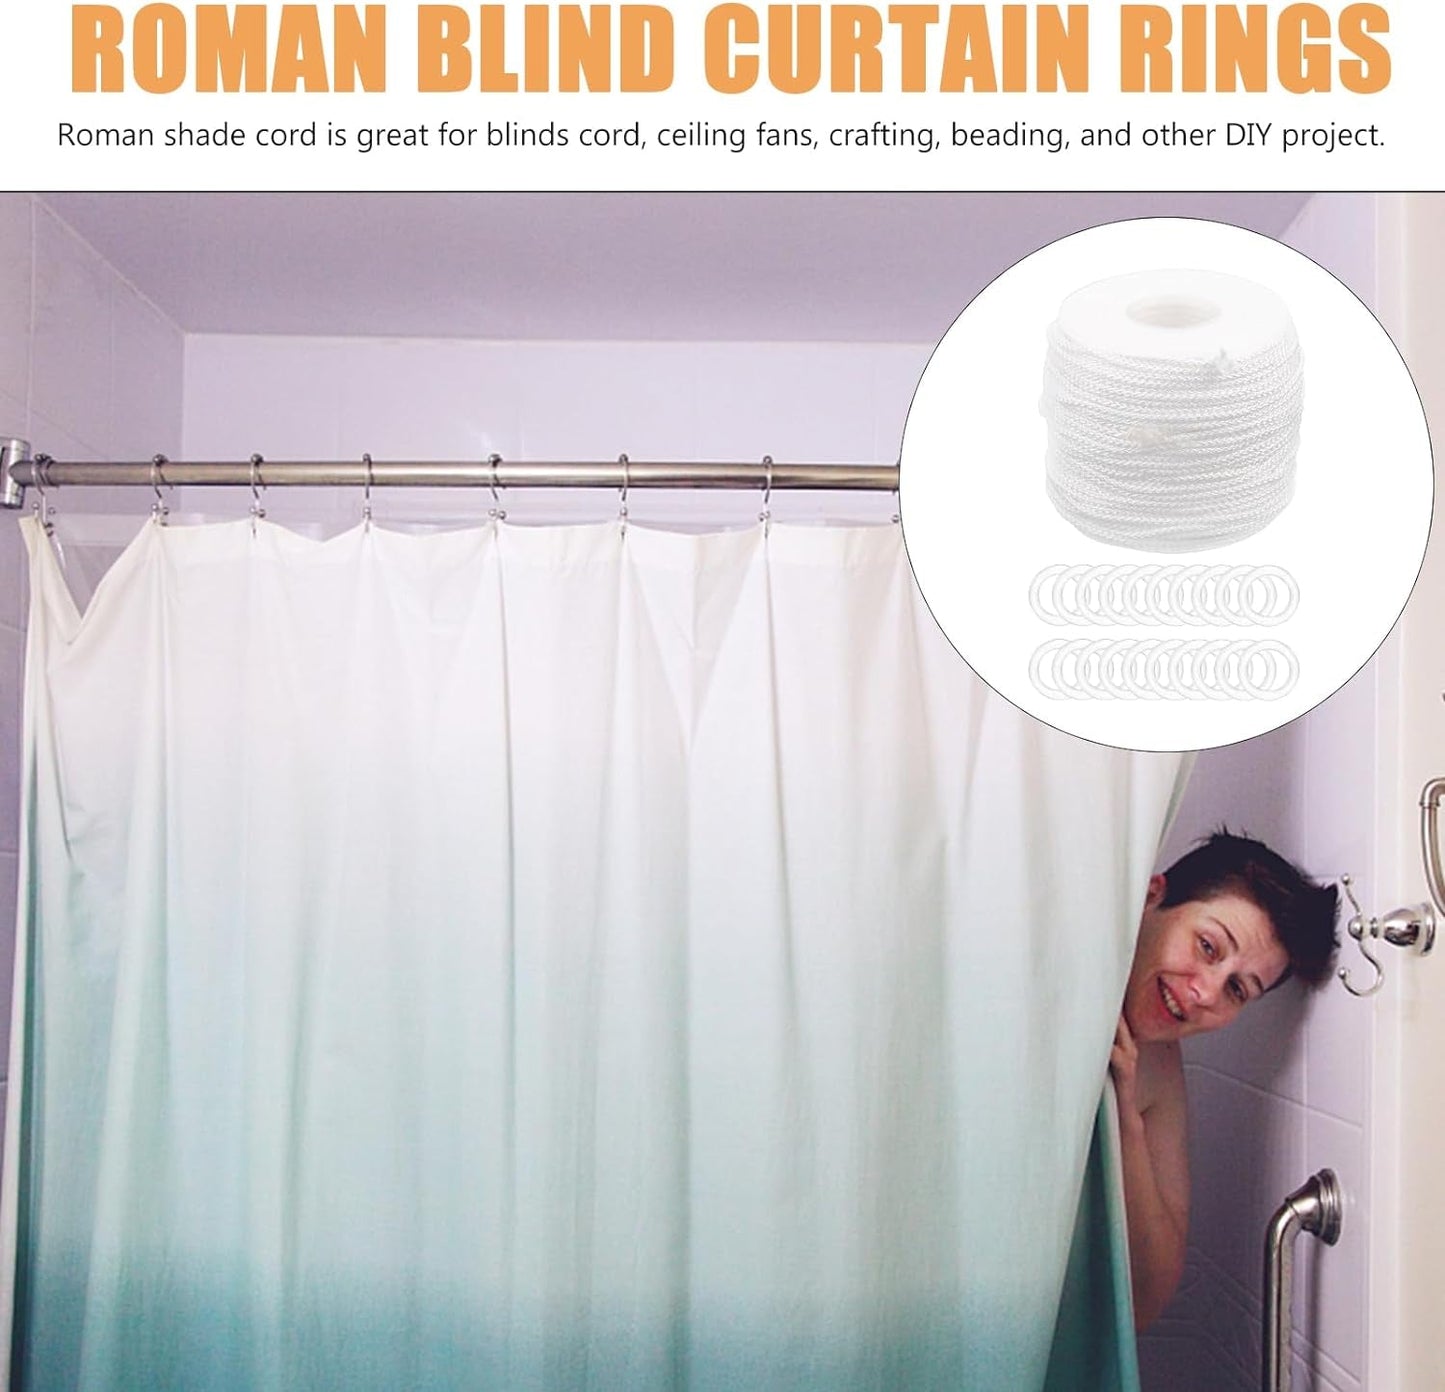 Amosfun 100Pcs Roman Curtain Rings Blind Curtain Rings and 55 Yards Cord, Roman Window Sheer Curtains Rings